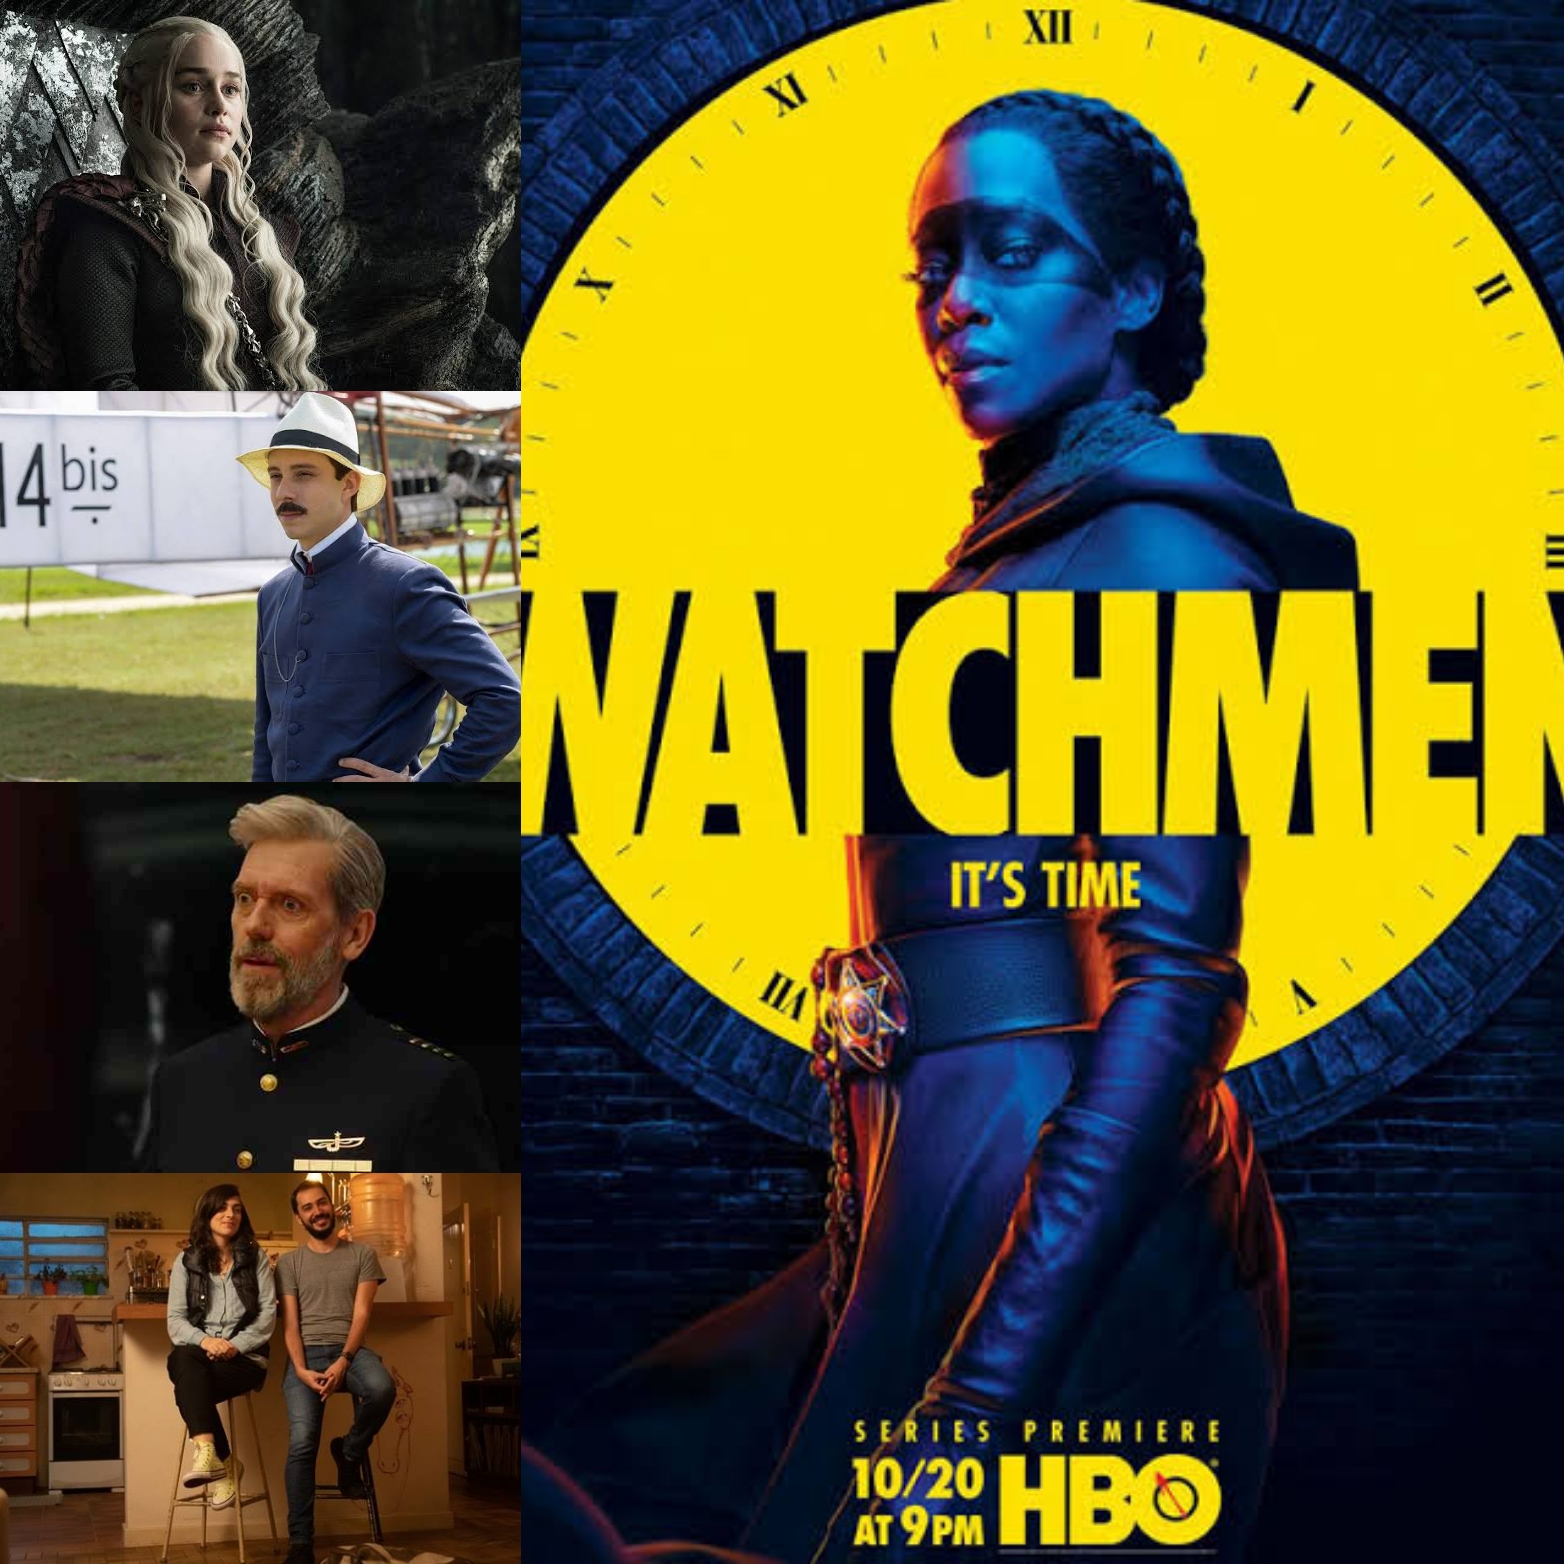 Conheça as 15 melhores séries do HBO Max que você precisa assistir